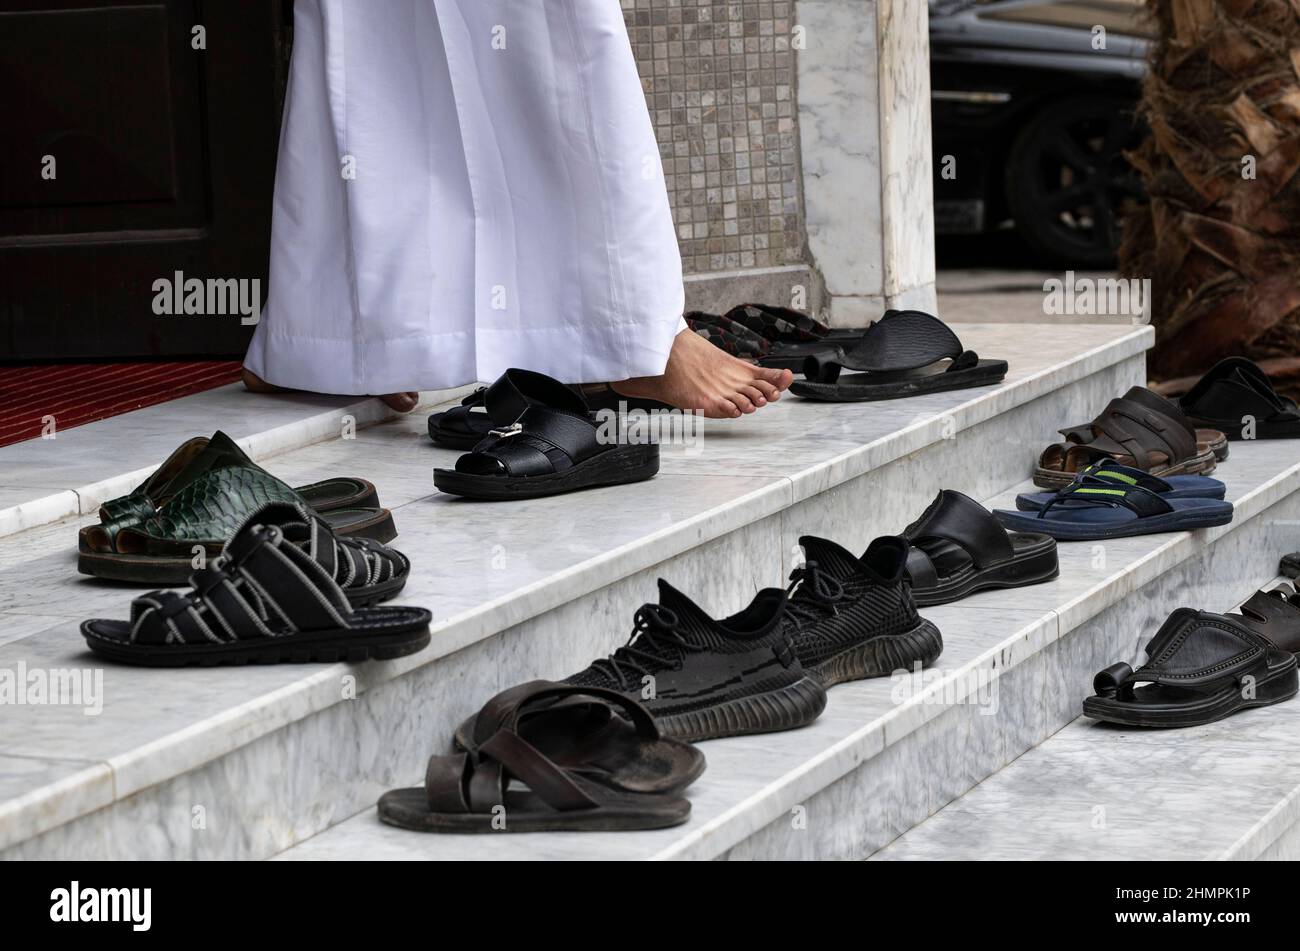 Primo piano di sandali su gradini e un uomo che esce da una moschea, l'Arabia Saudita Foto Stock